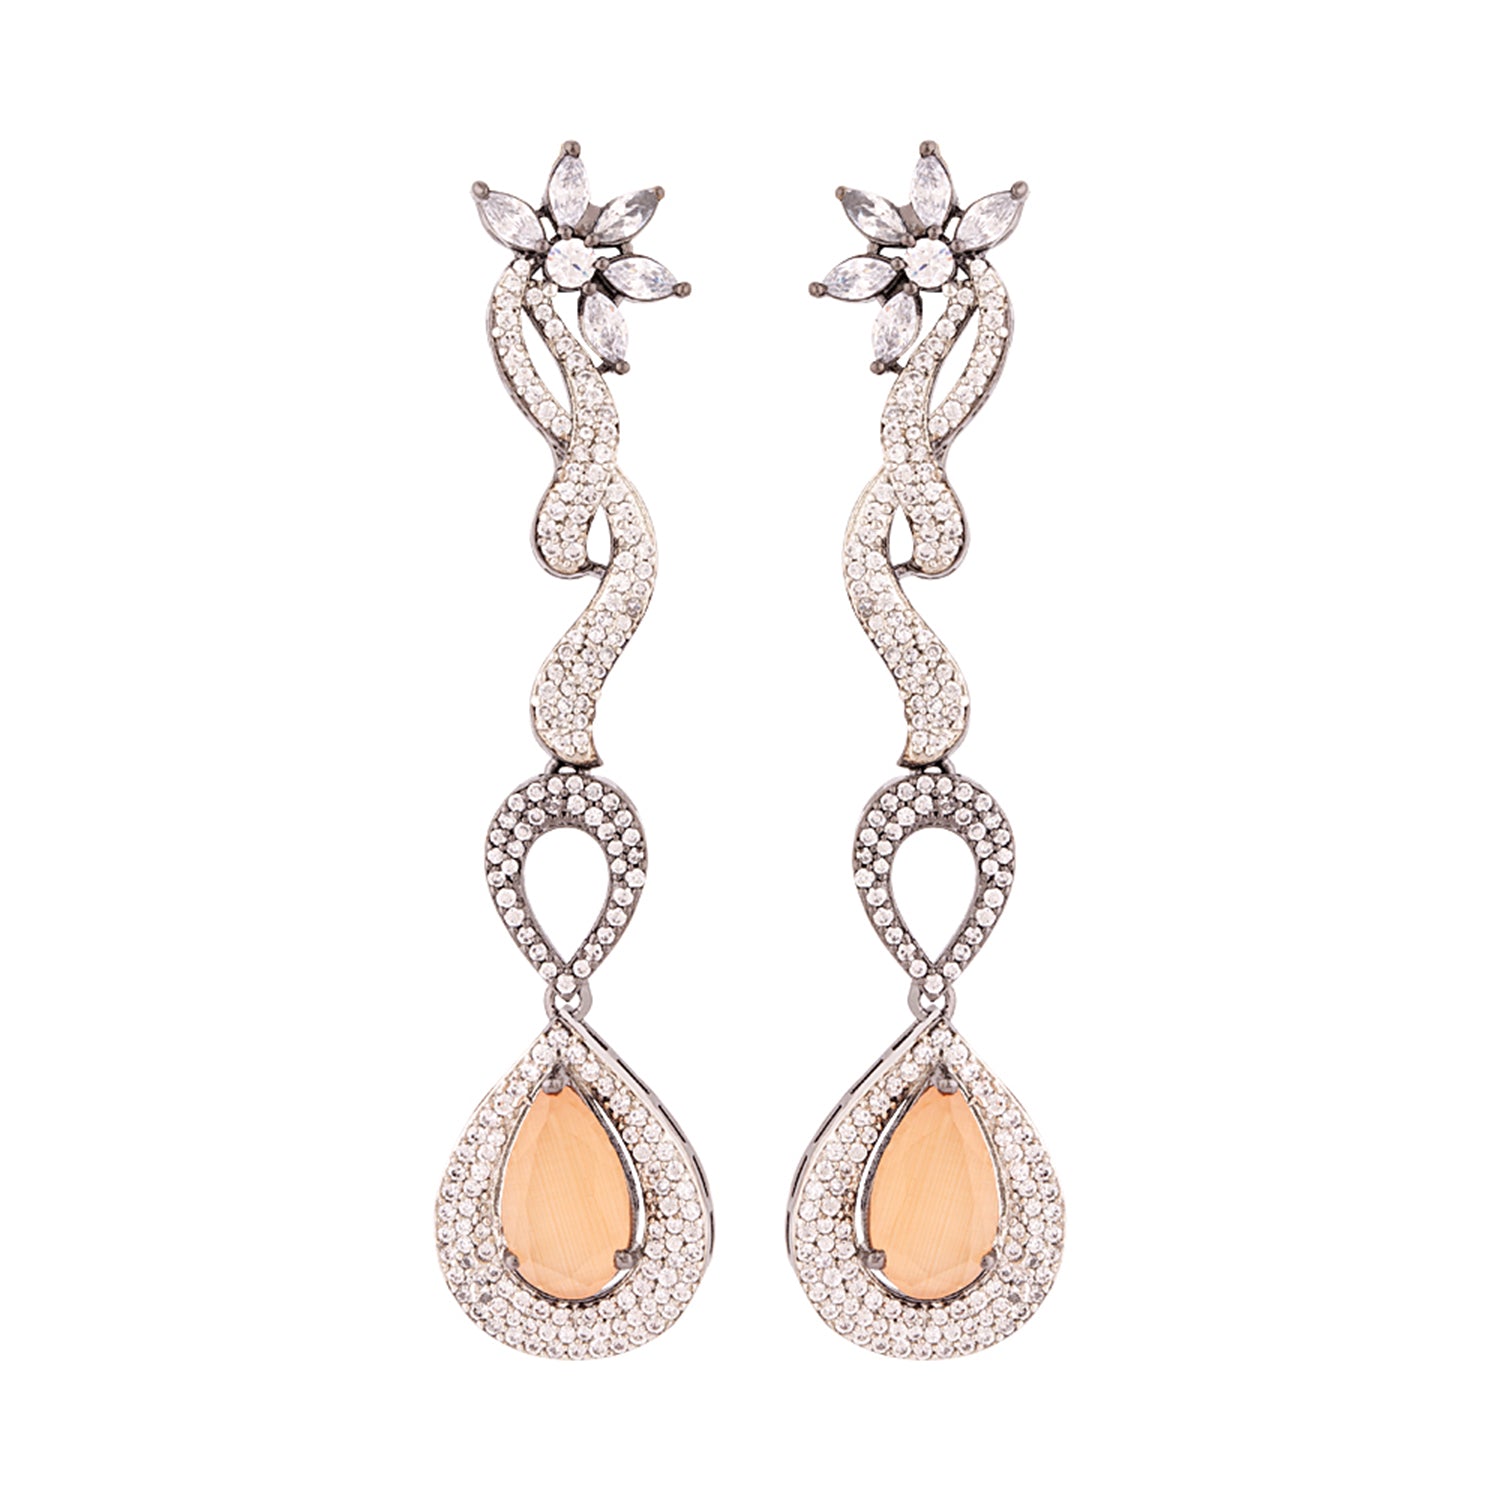 Brass Zircon Gems Adorned Earrings